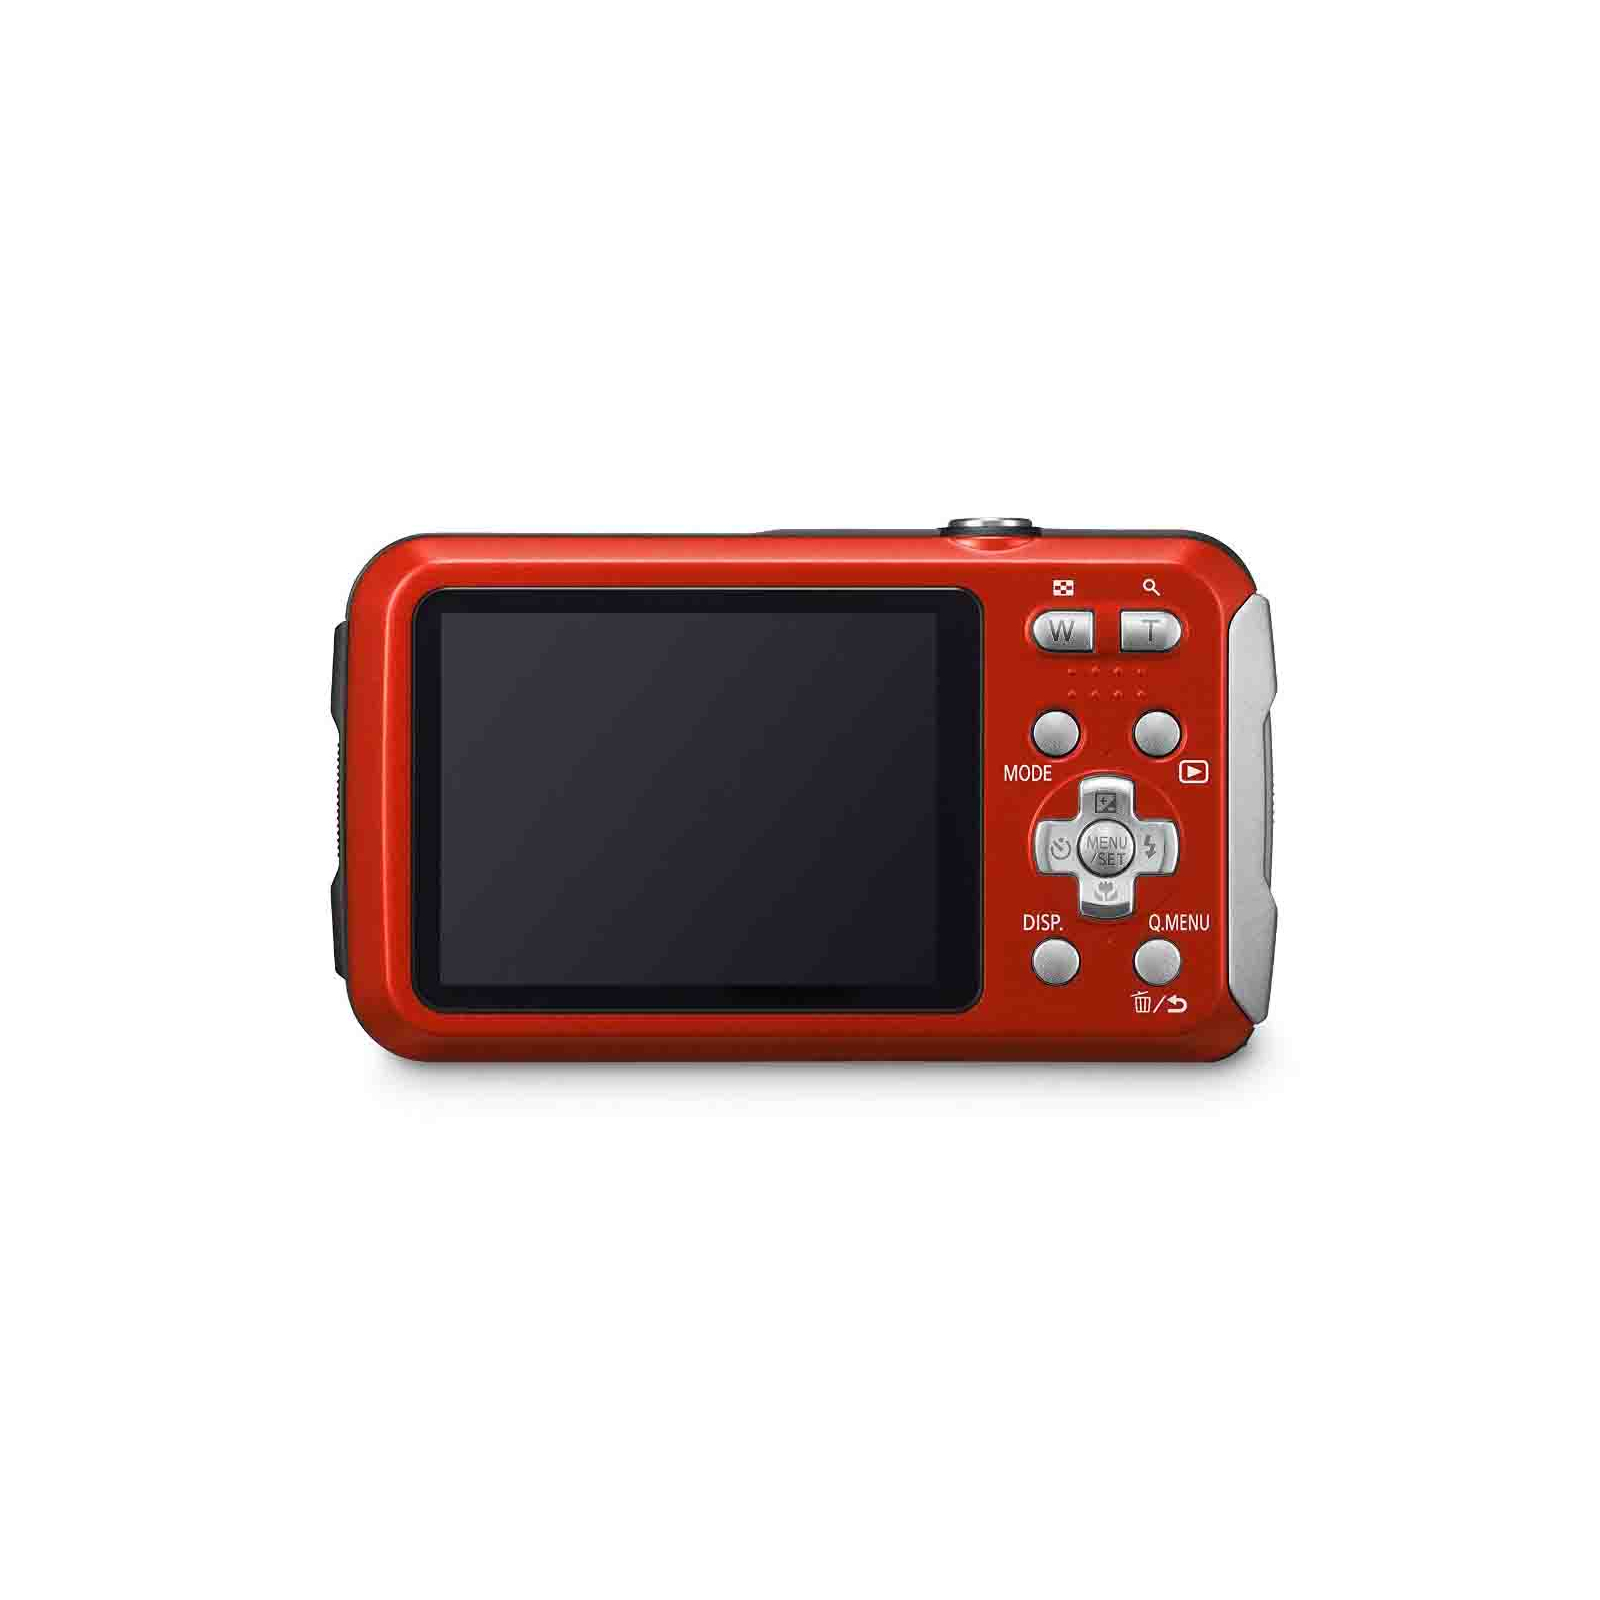 Цифровой фотоаппарат Panasonic DMC-FT30EE-R Red (DMC-FT30EE-R) изображение 3